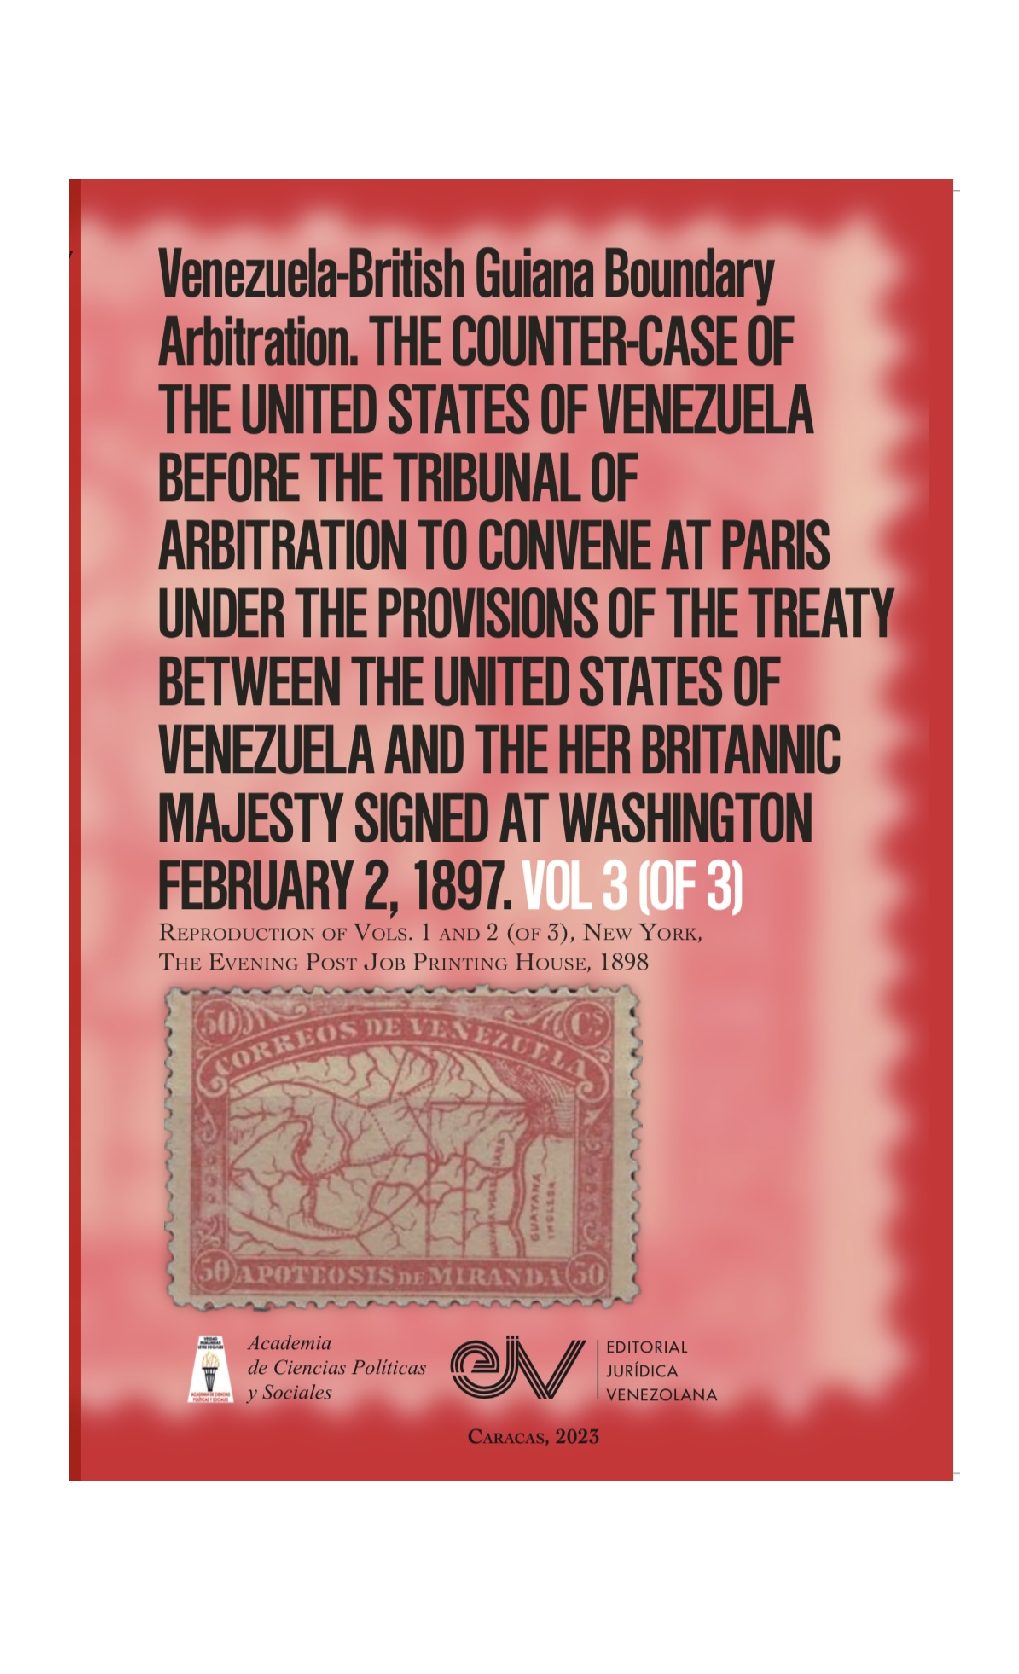 Disponible a texto completo el cuarto libro de la serie de la Academia de Ciencias Políticas y Sociales sobre controversia del Esequibo: Venezuela-British Guiana Boundary Arbitration. Vol. 3